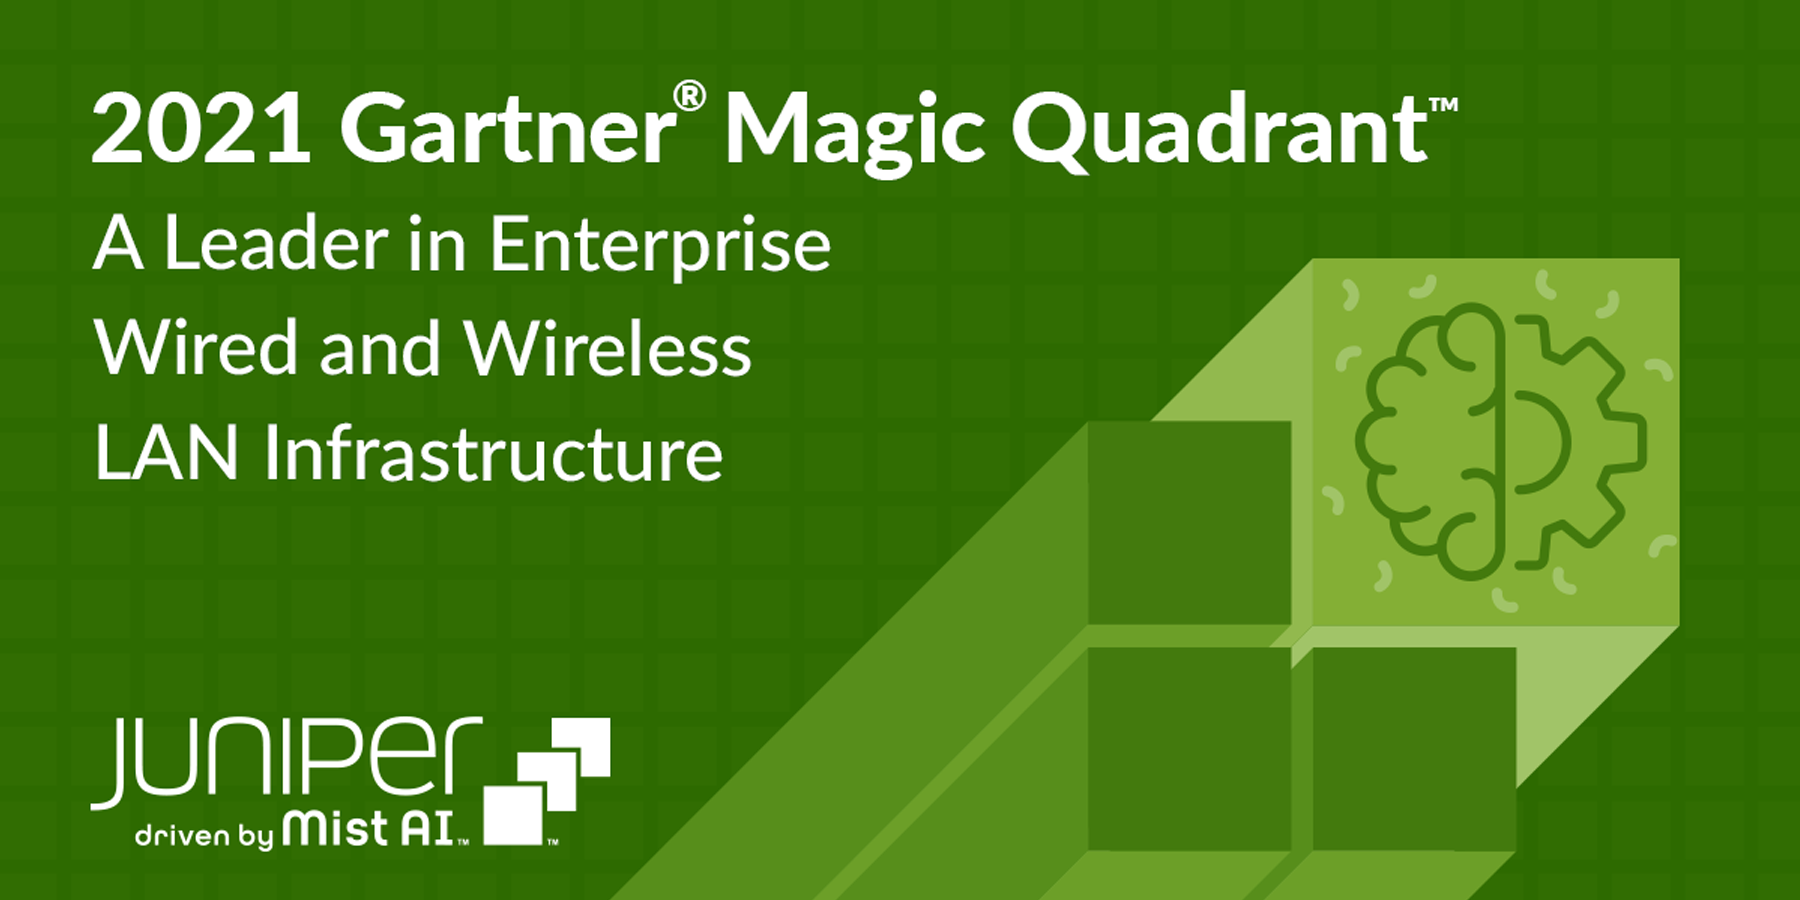 Juniper Networks parmi les Leaders du Gartner® Magic Quadrant™ 2021 pour les infrastructures au LAN filaire et sans fil